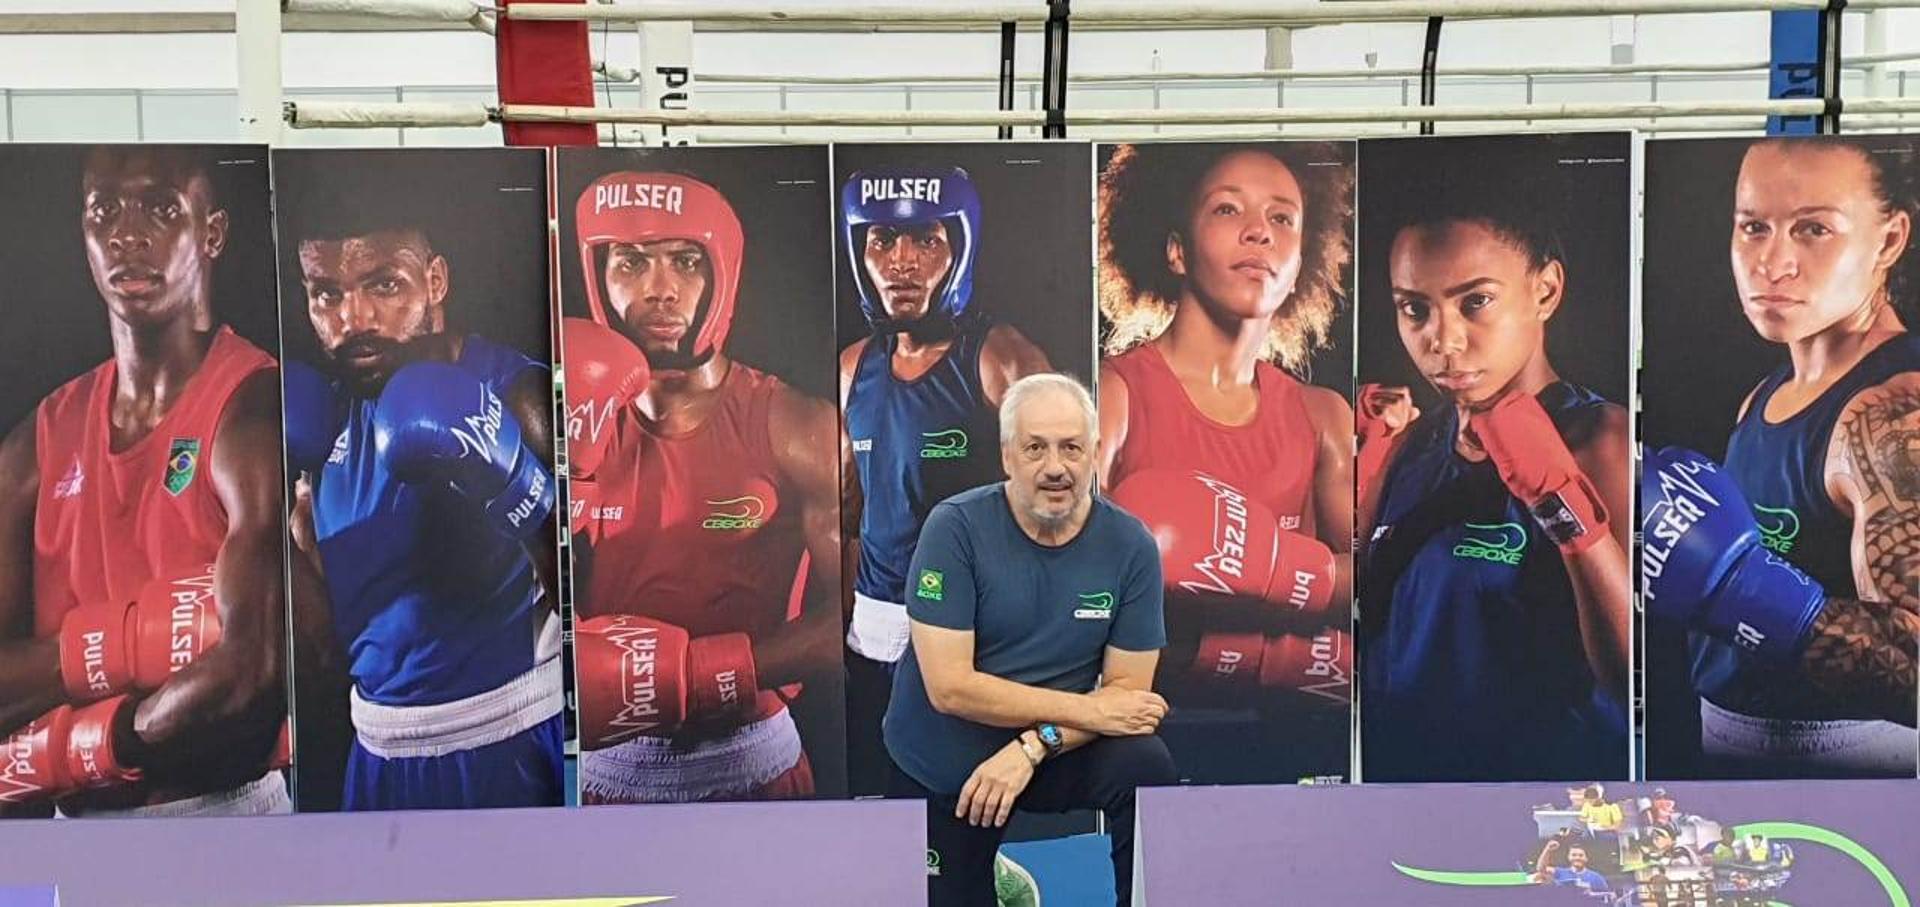 O Presidente da Confederação Brasileira de Boxe, Marcos Cândido de Brito, que, embora tenha assumido a presidência este ano, integra a entidade desde 2009